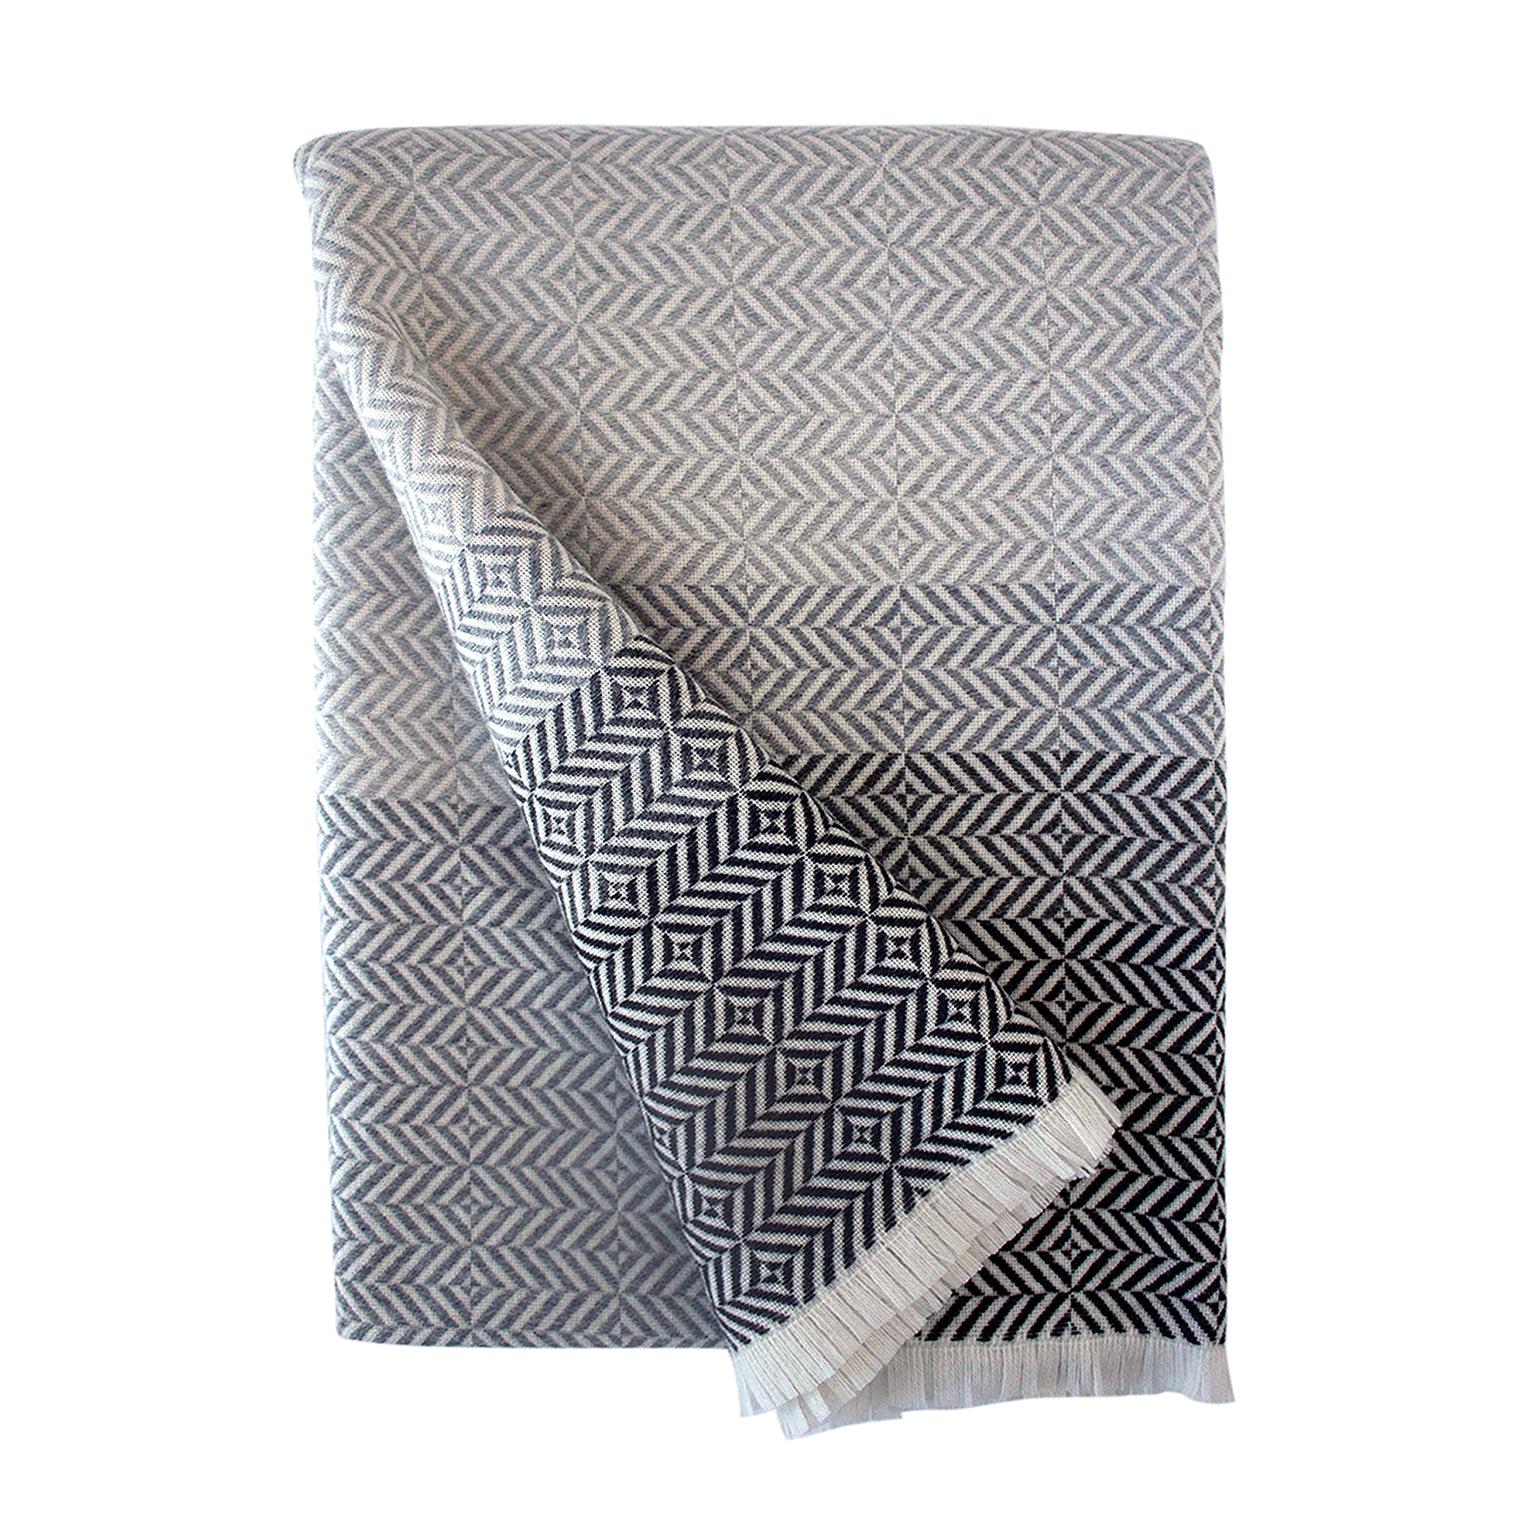 'Uccle' Woven Block Geometric Merino Wool Throw, Pearl Grey